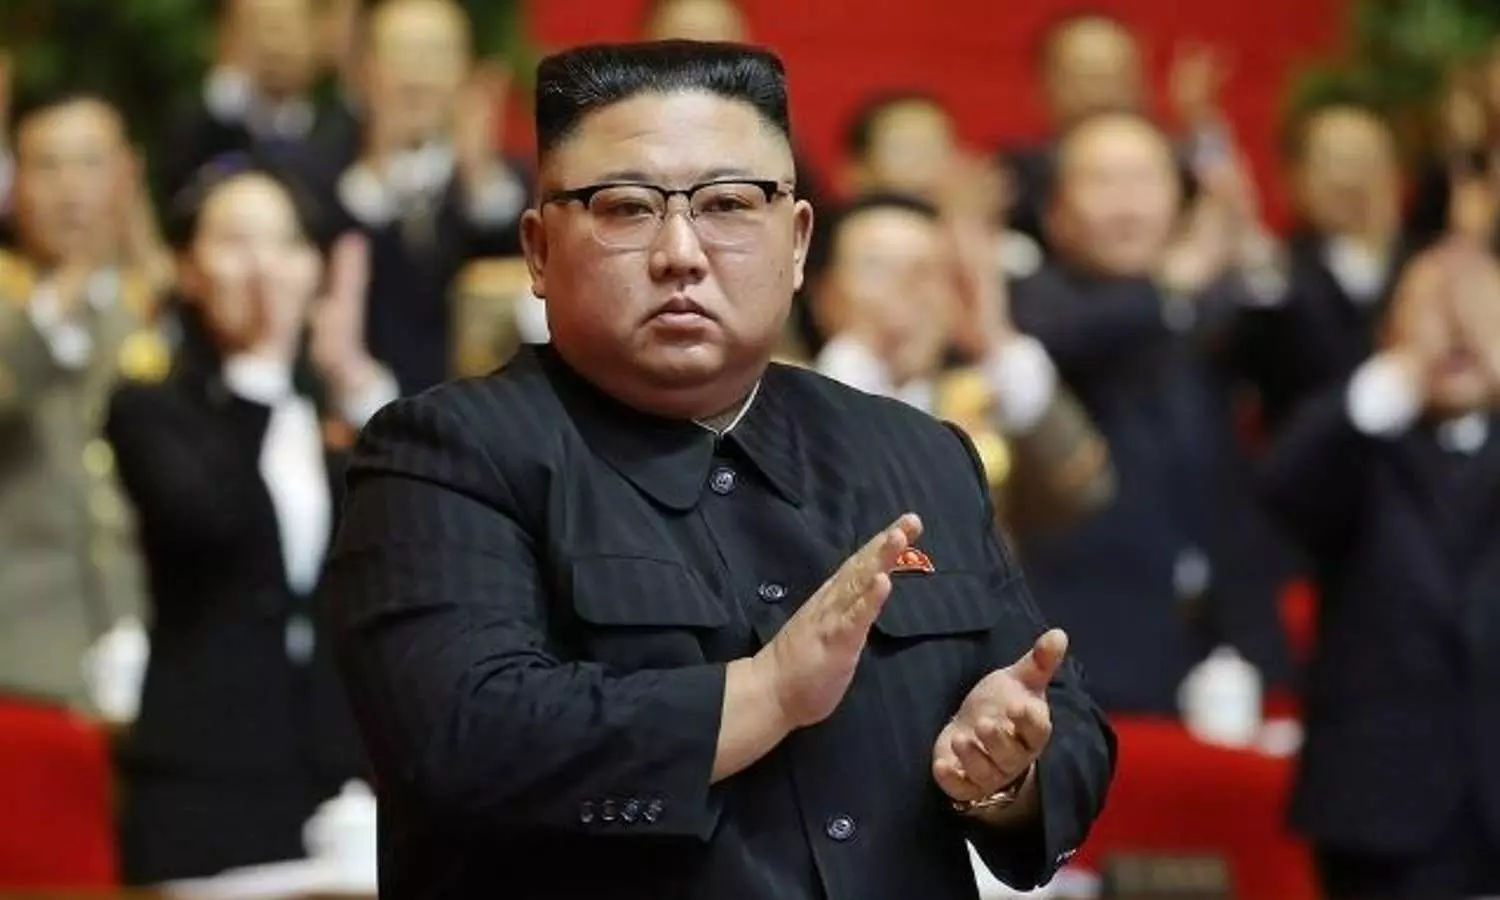 उत्तर कोरिया के तानाशाह Kim Jong Un ने घटाया वजन, क्या आपने देखा नया लुक?